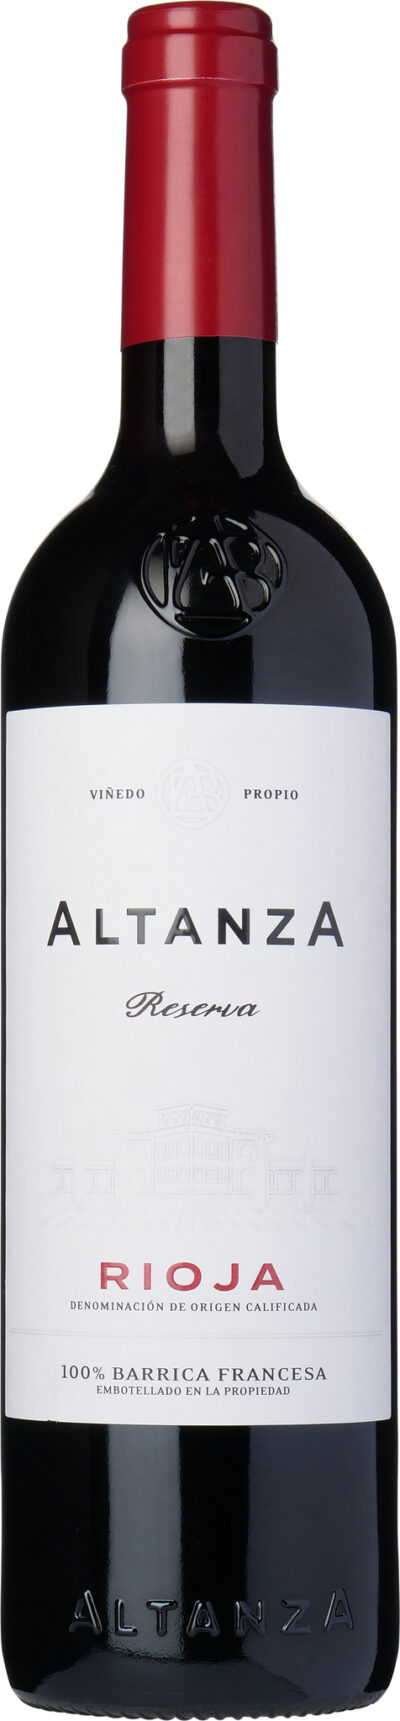 Altanza Reserva Rioja